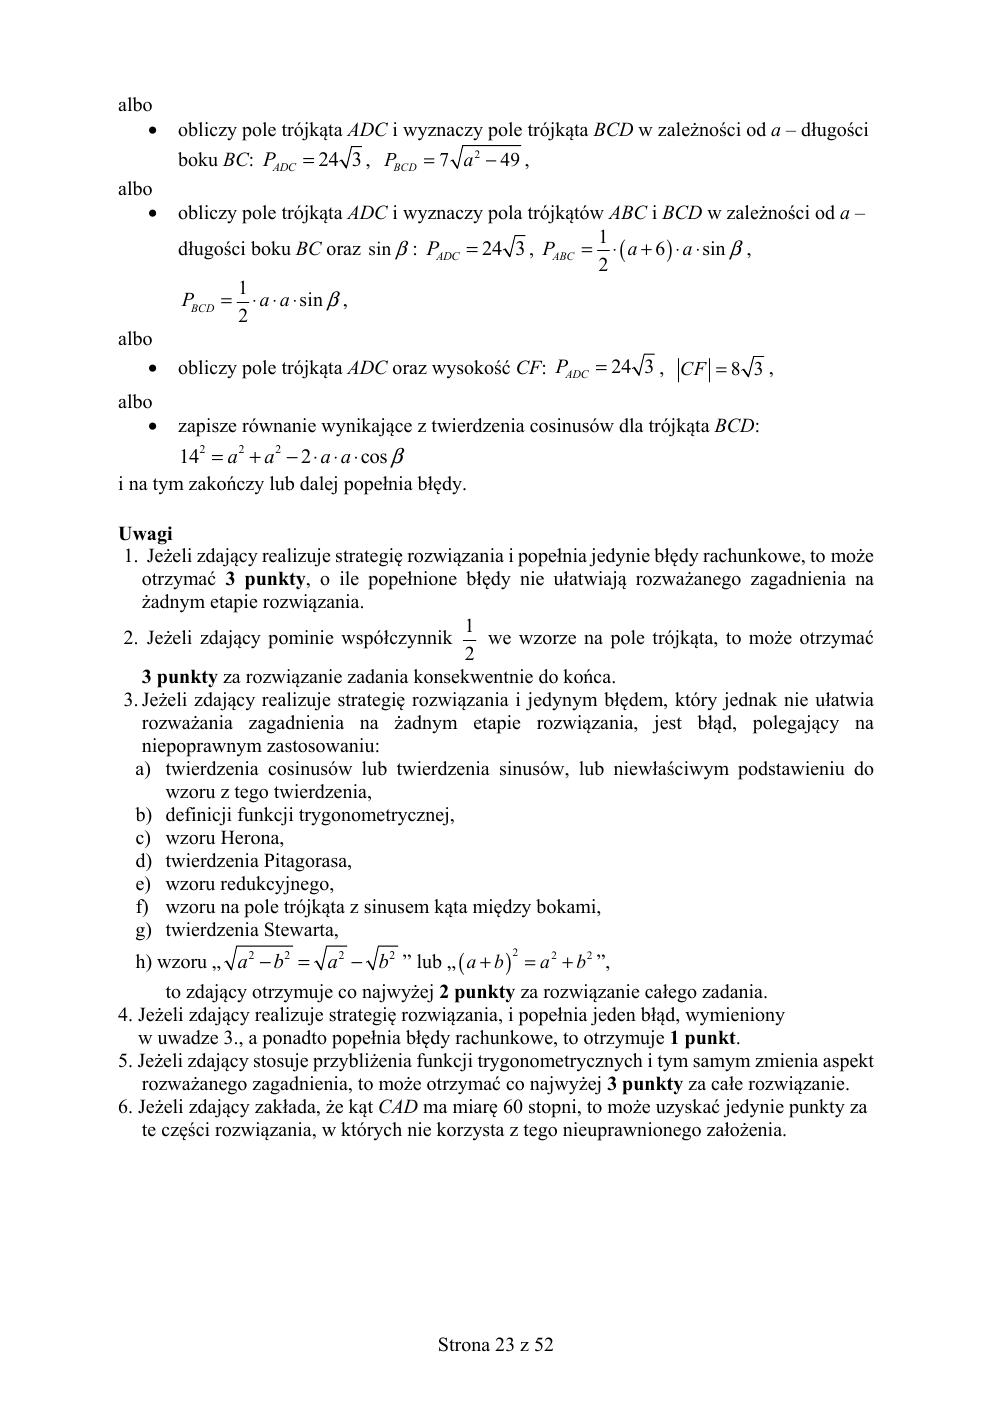 matematyka rozszerzony - matura 2019 - odpowiedzi-23